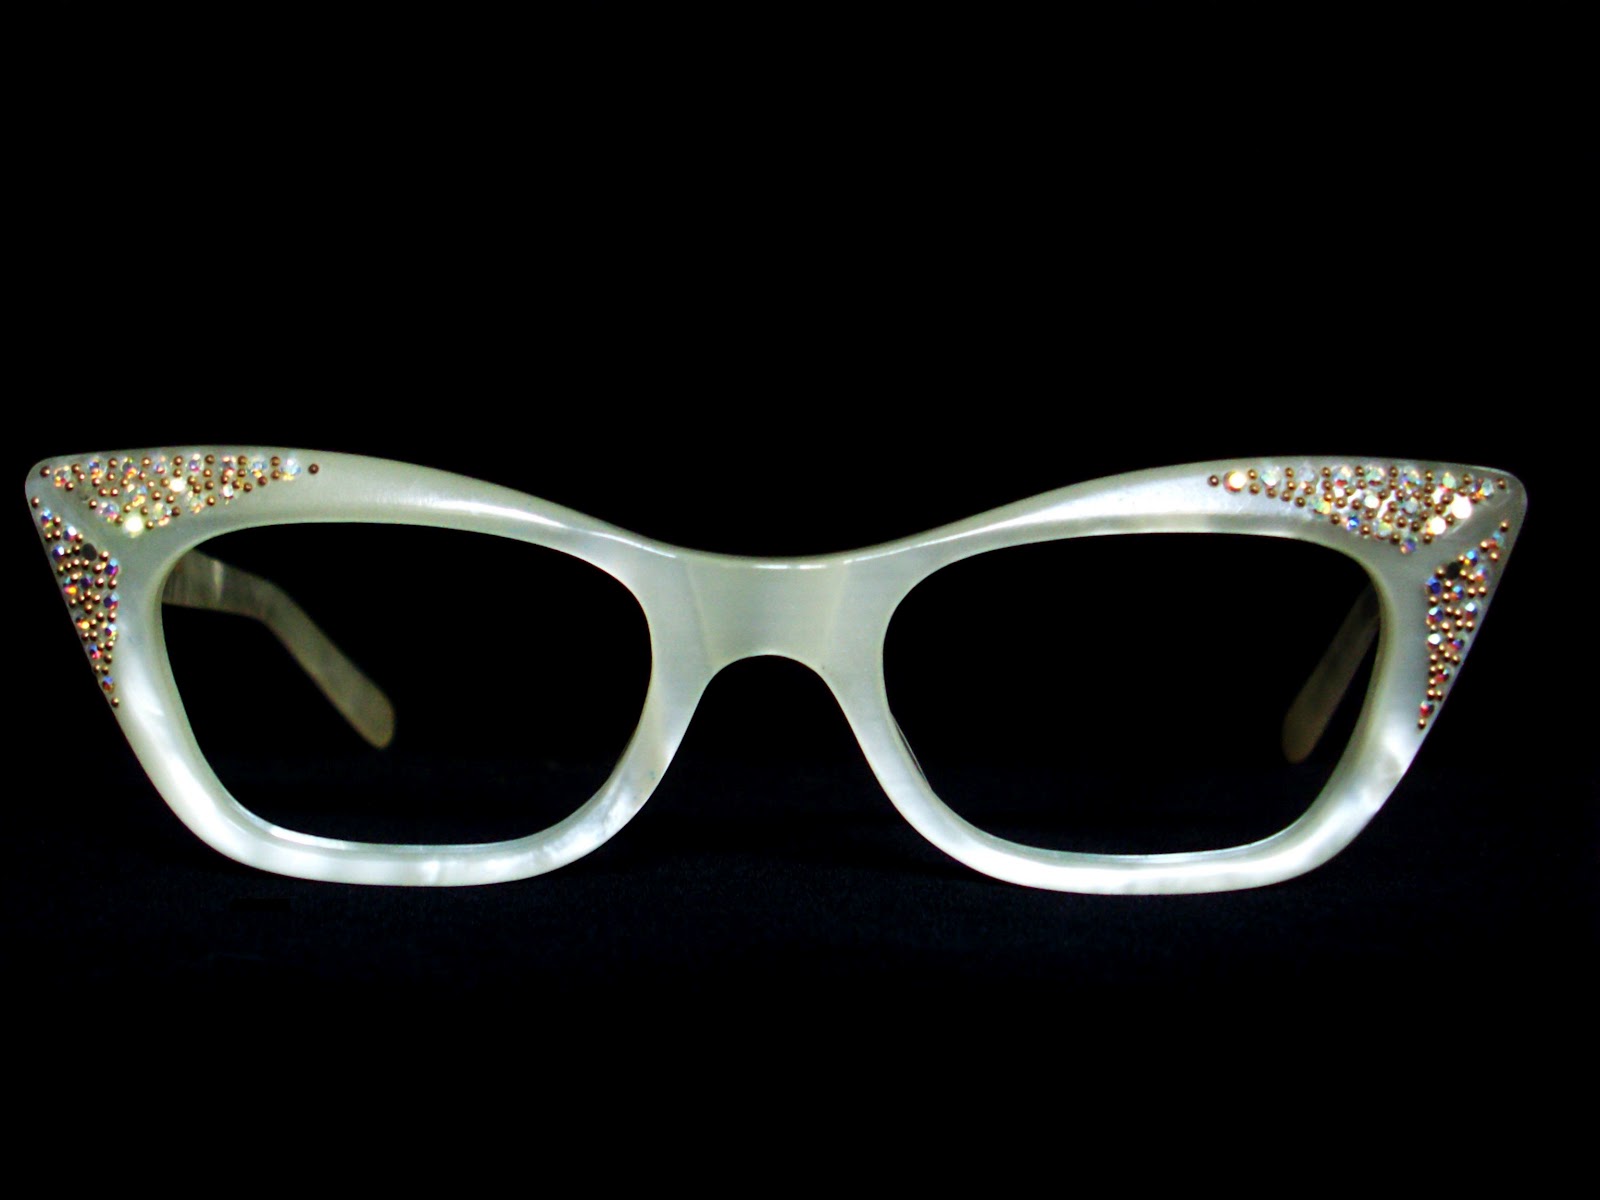 Vintage Eyeglasses Frames Eyewear Sunglasses 50S: Vintage 50s Cat Eye